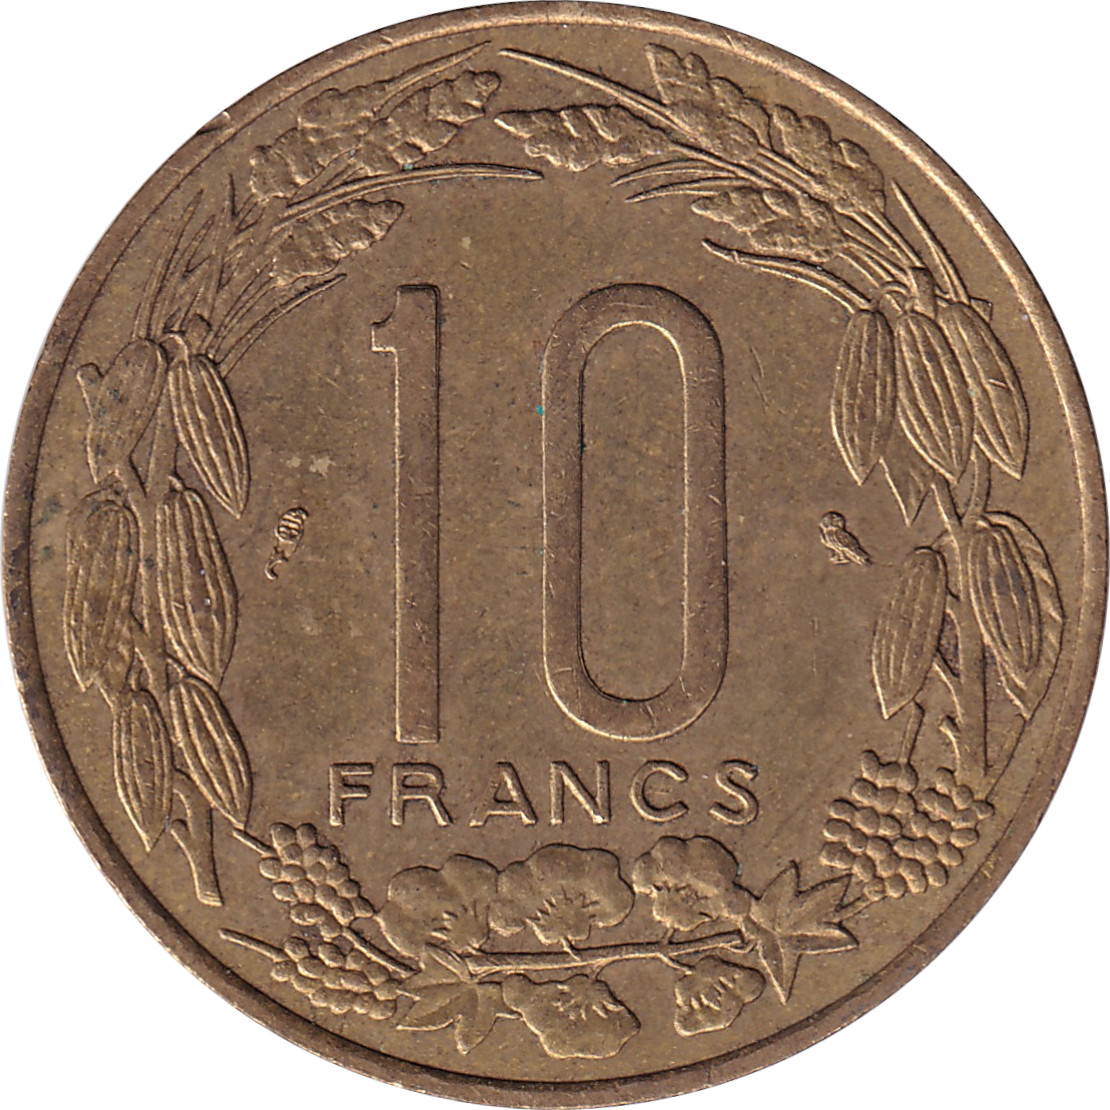 10 francs - Banque Centrale • Cameroun